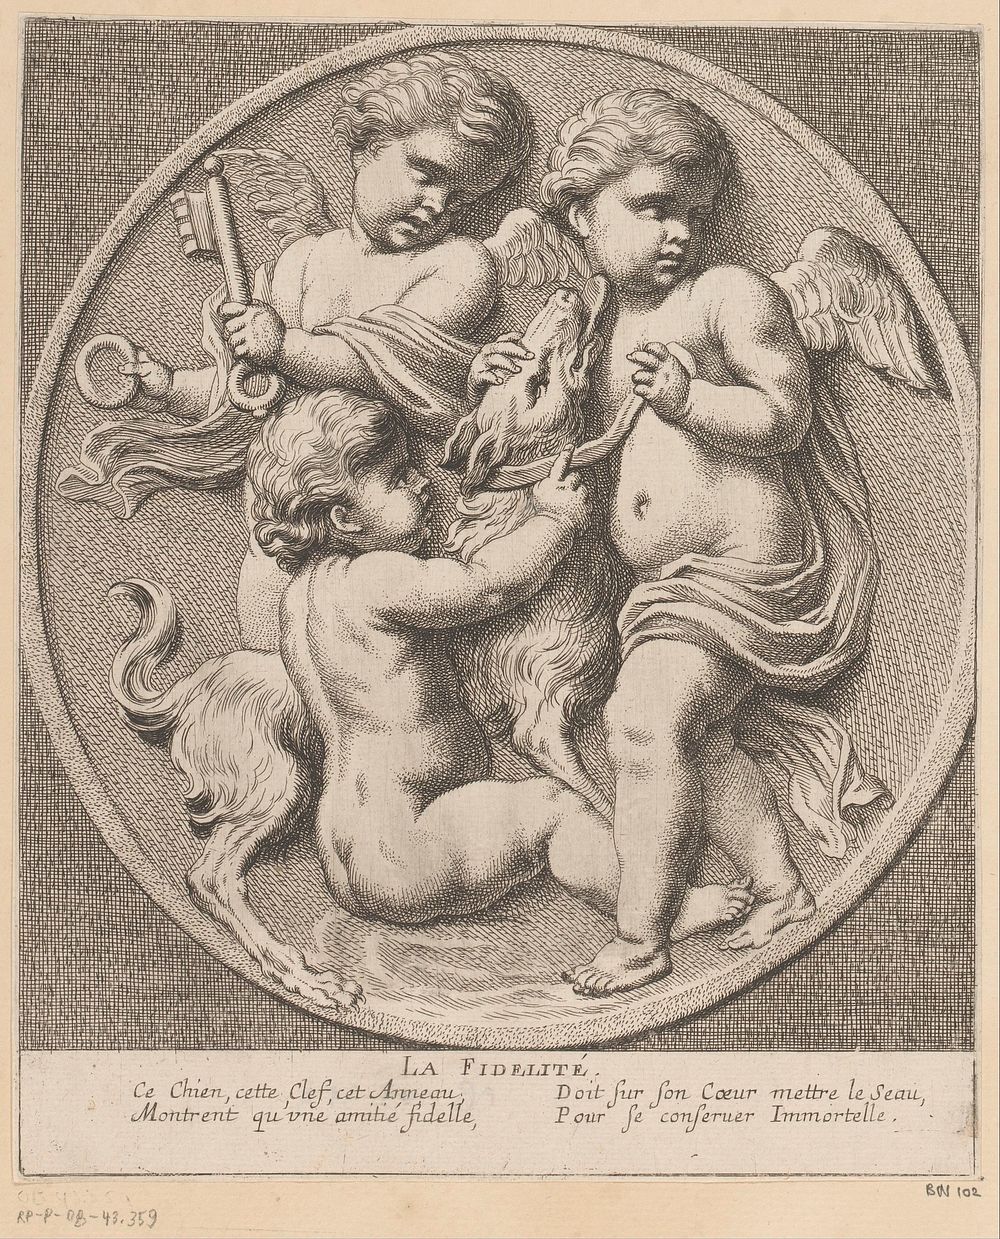 Drie putti doen een hond een halsband om (1654) by Louis Ferdinand I Elle, Gerard van Opstal, Tetelin, Jacques van Merlen…